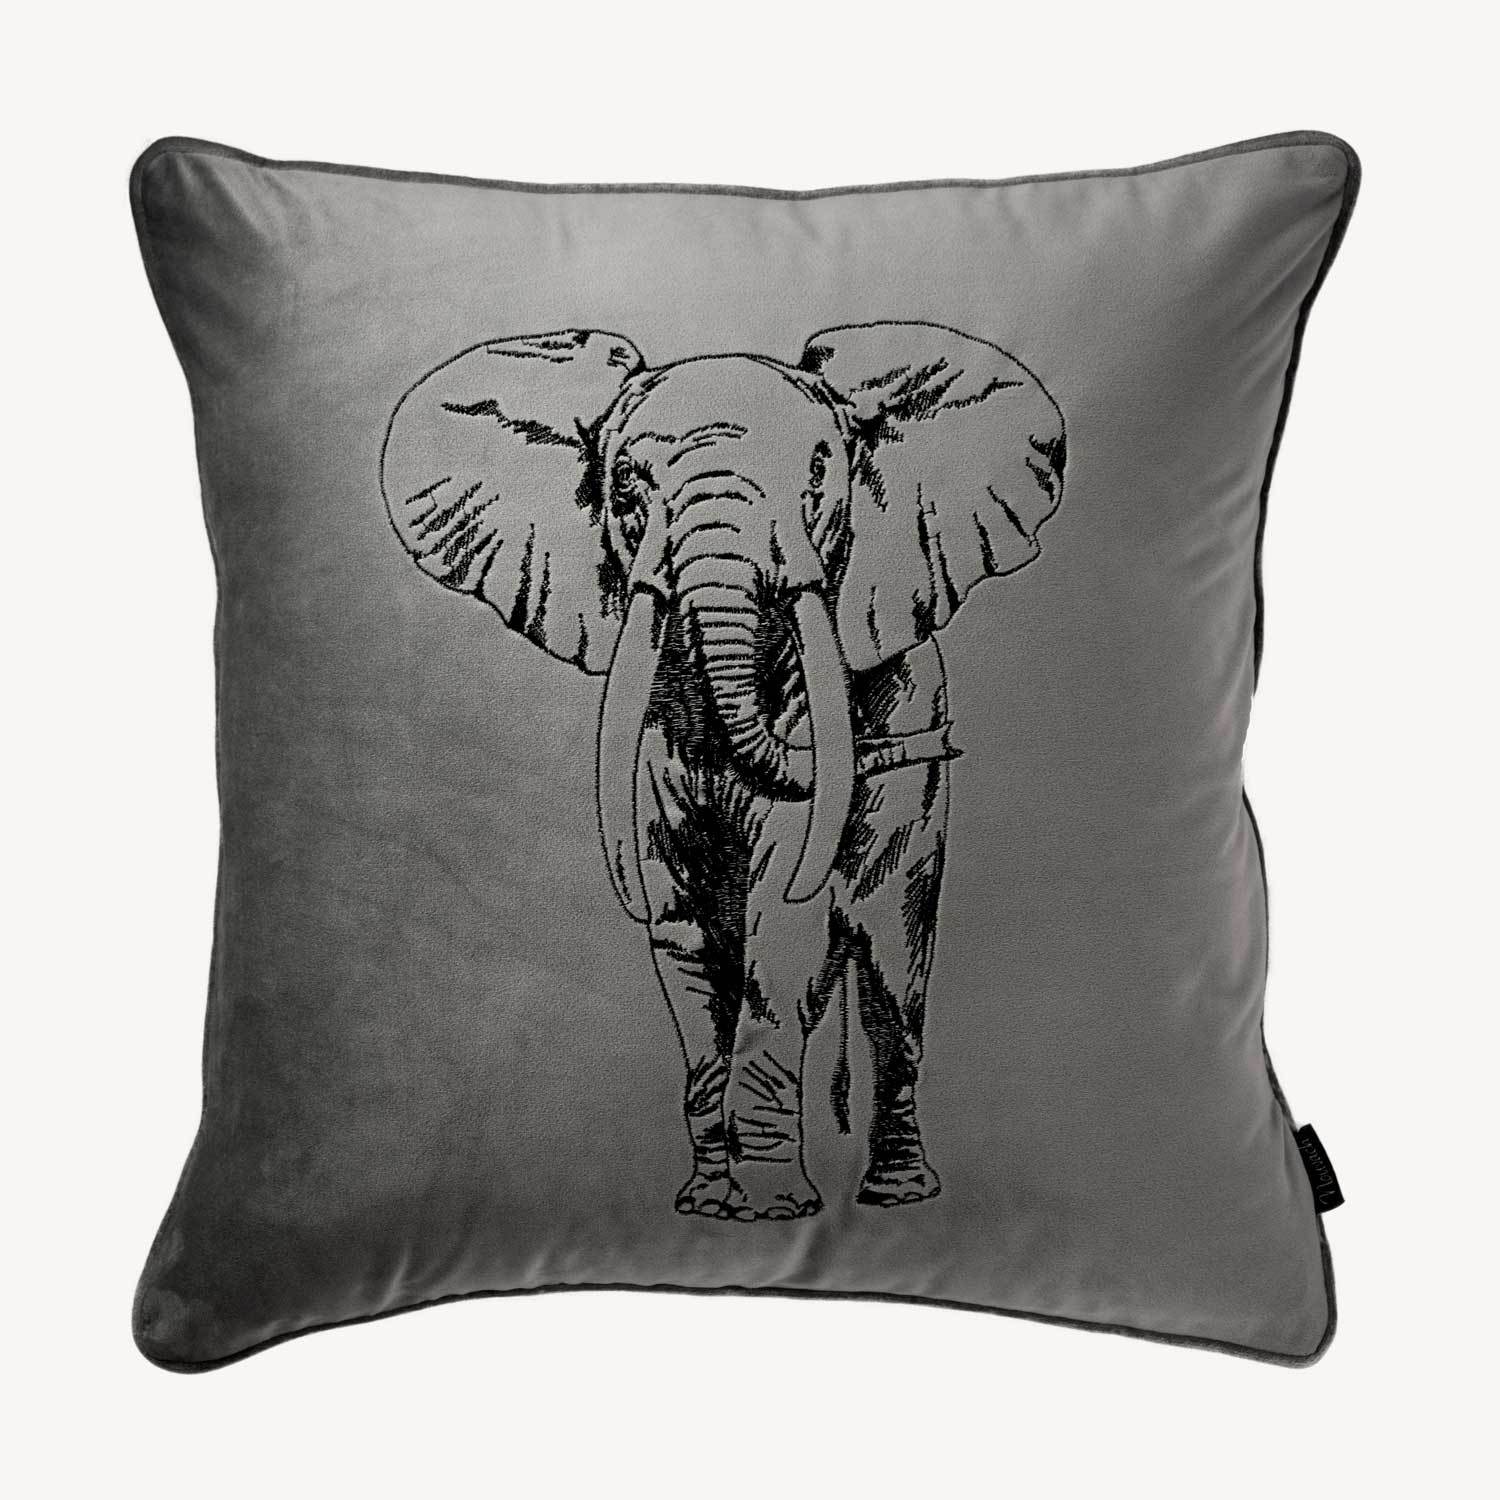 grått kuddfodral i sammet med motiv på en elefant och storlek 45x45cm